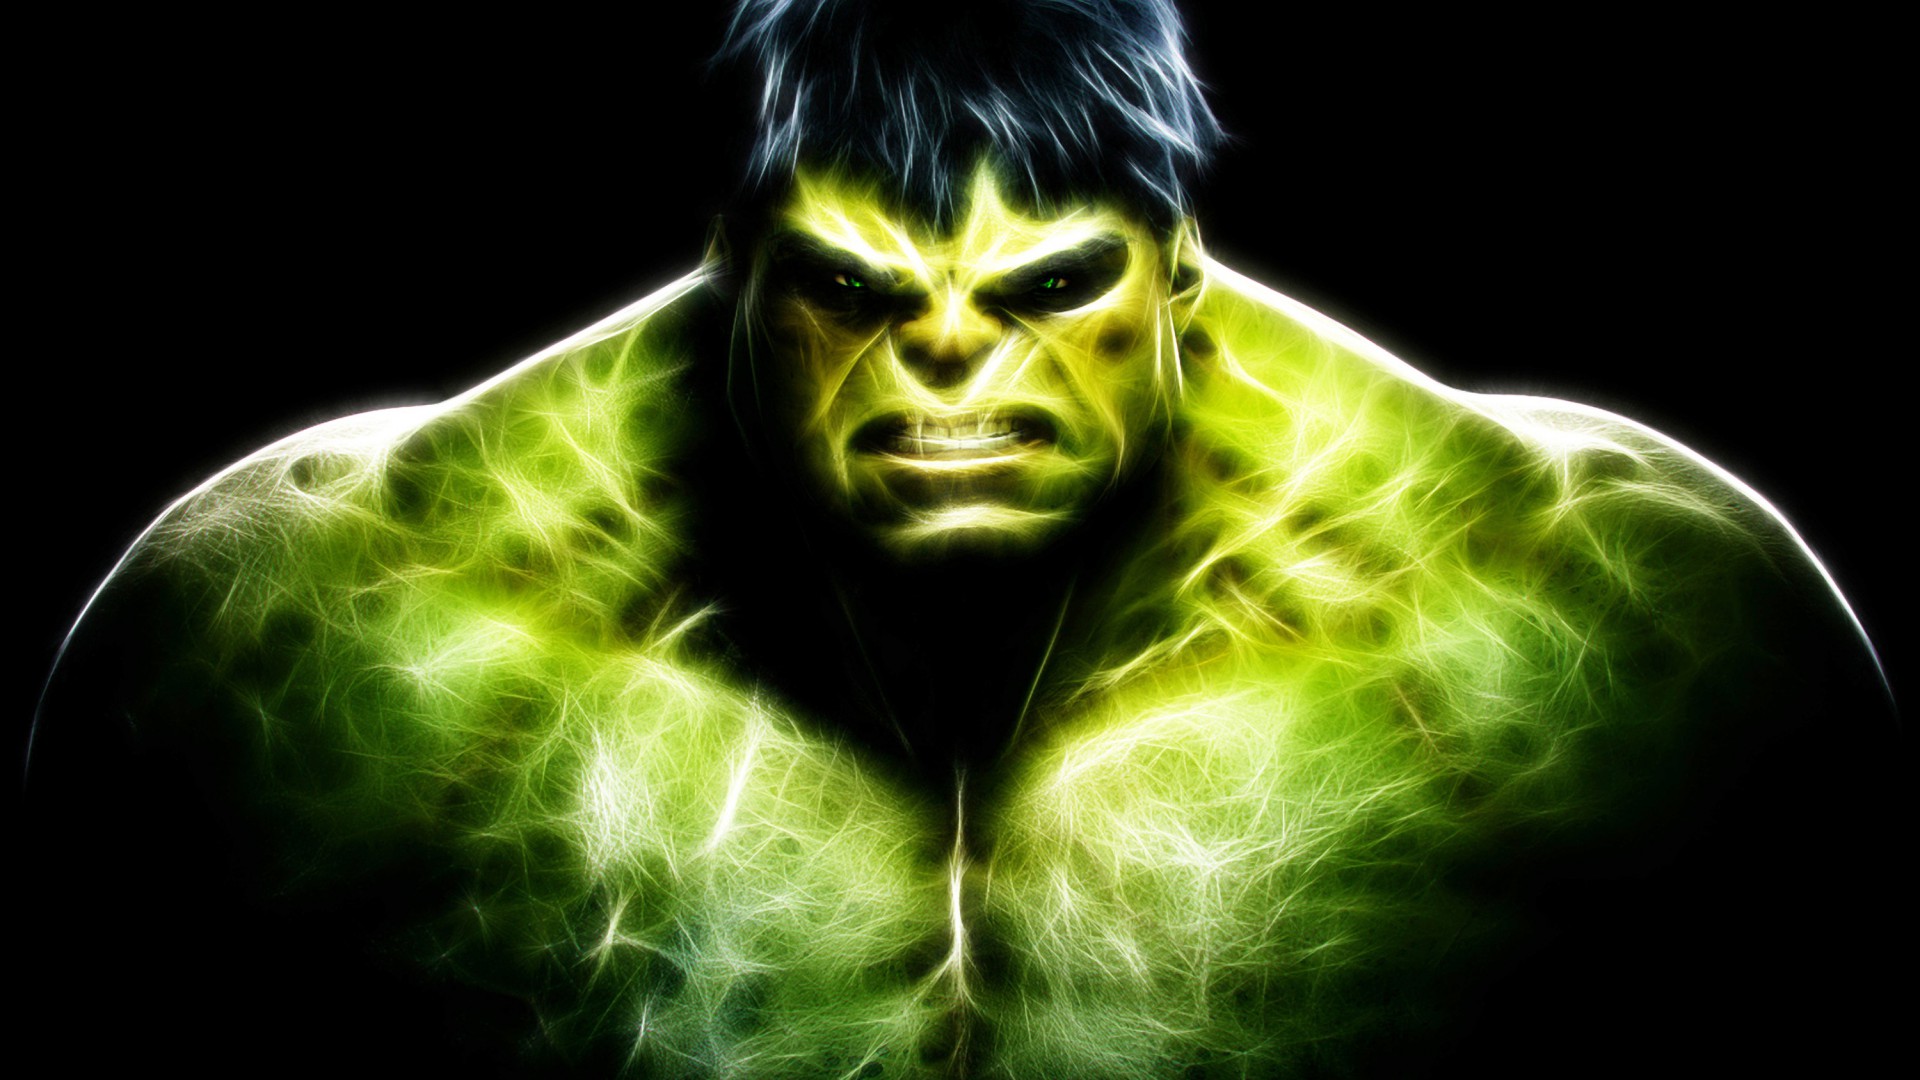 49+] Incredible Hulk Desktop Wallpaper - WallpaperSafari